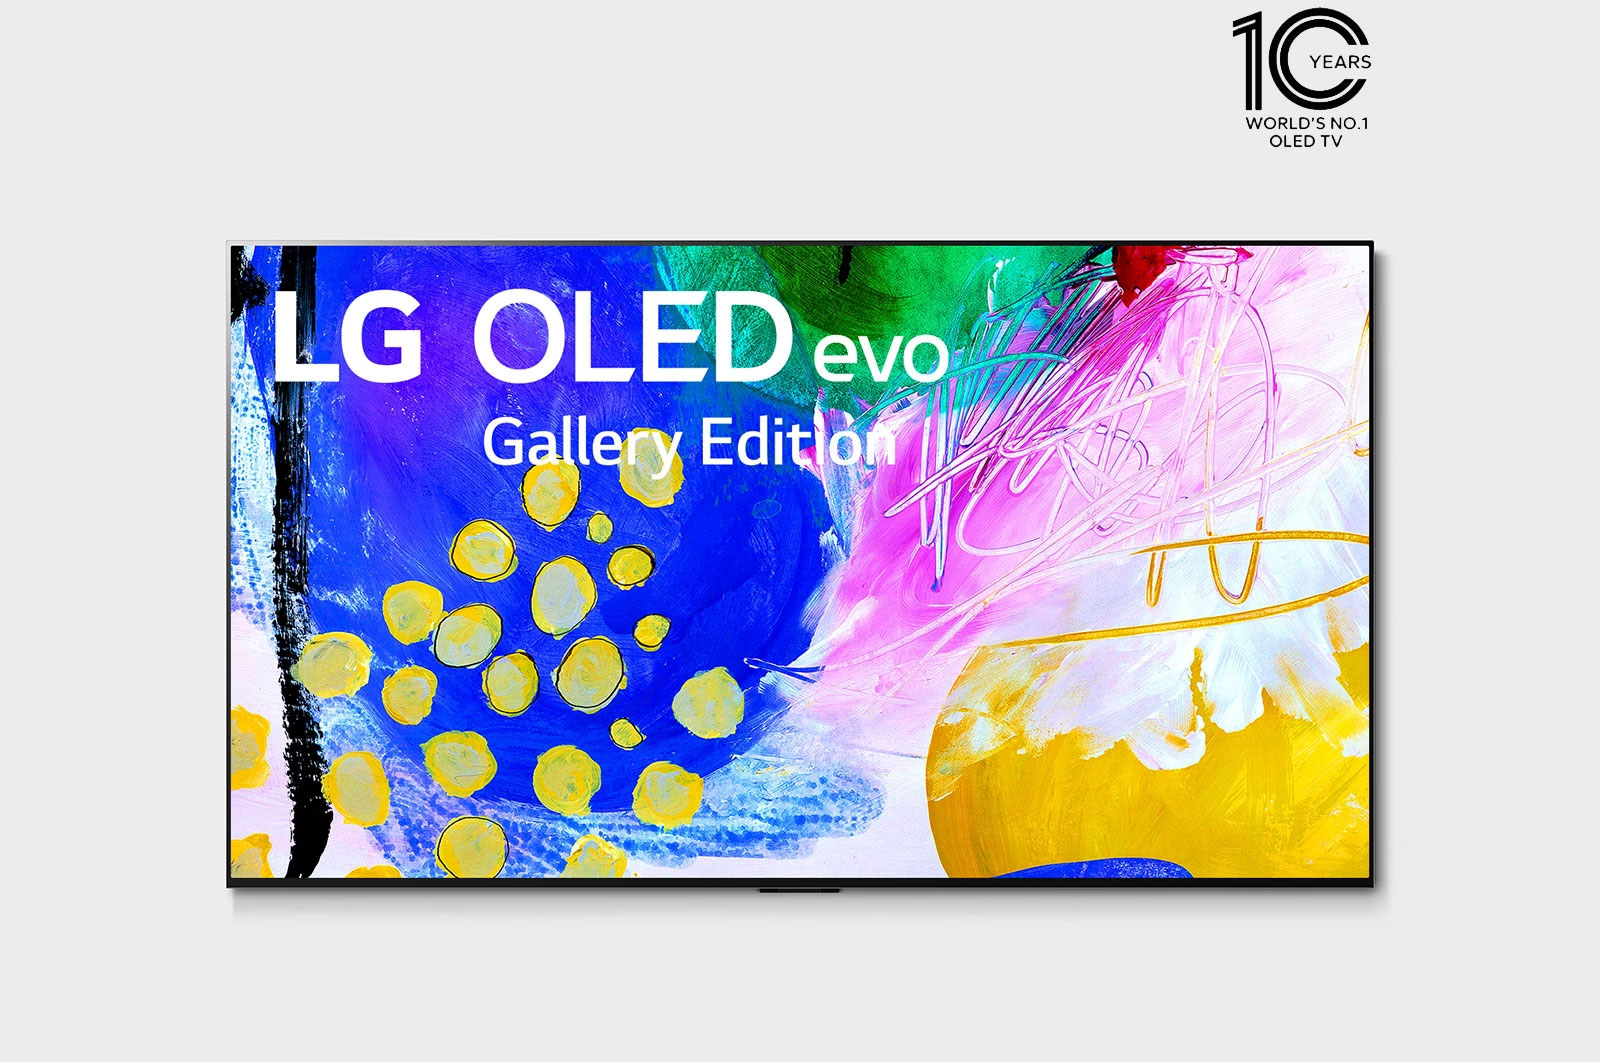 LG G2 (OLED65G2) Review: LG's best 4K OLED